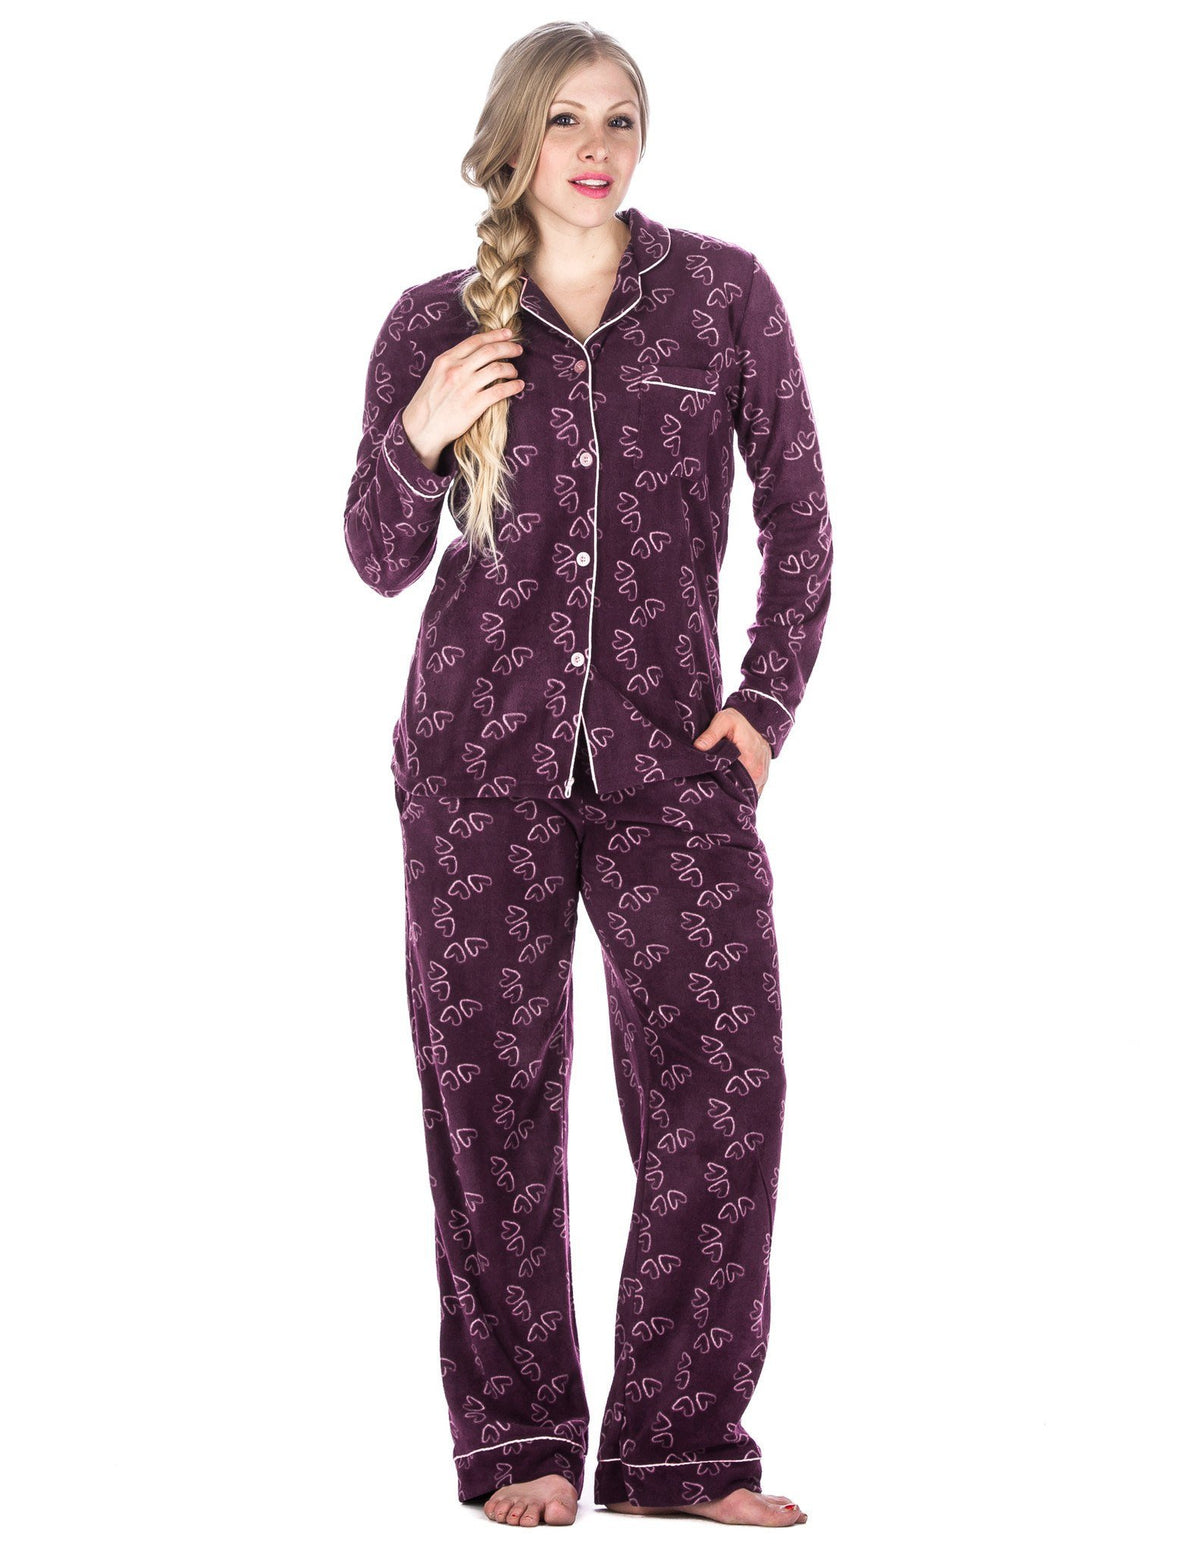 Box Packaged Women's Microfleece Pajama Sleepwear Set - Hearts - Purple